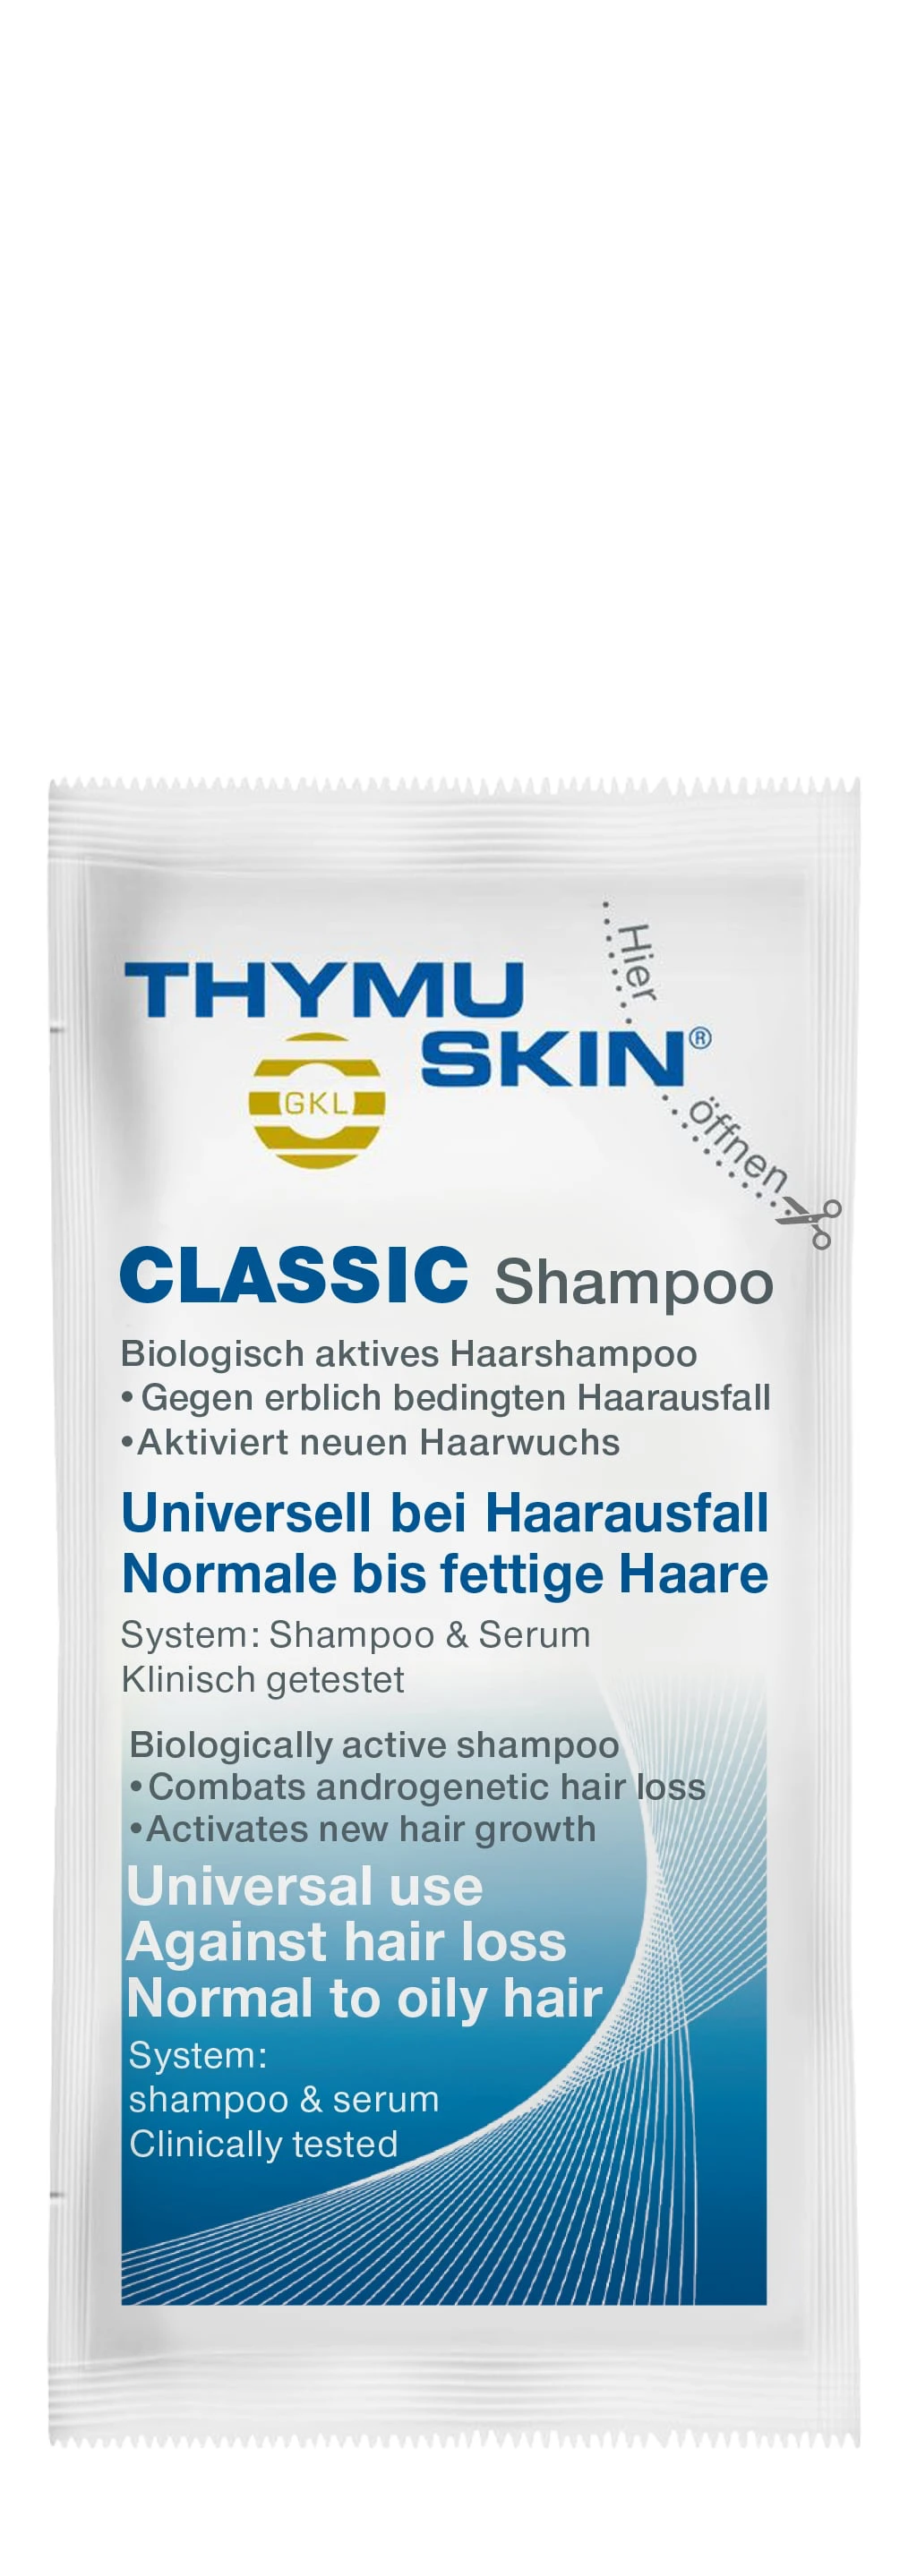 Thymuskin Classic Shampoo 4 ml